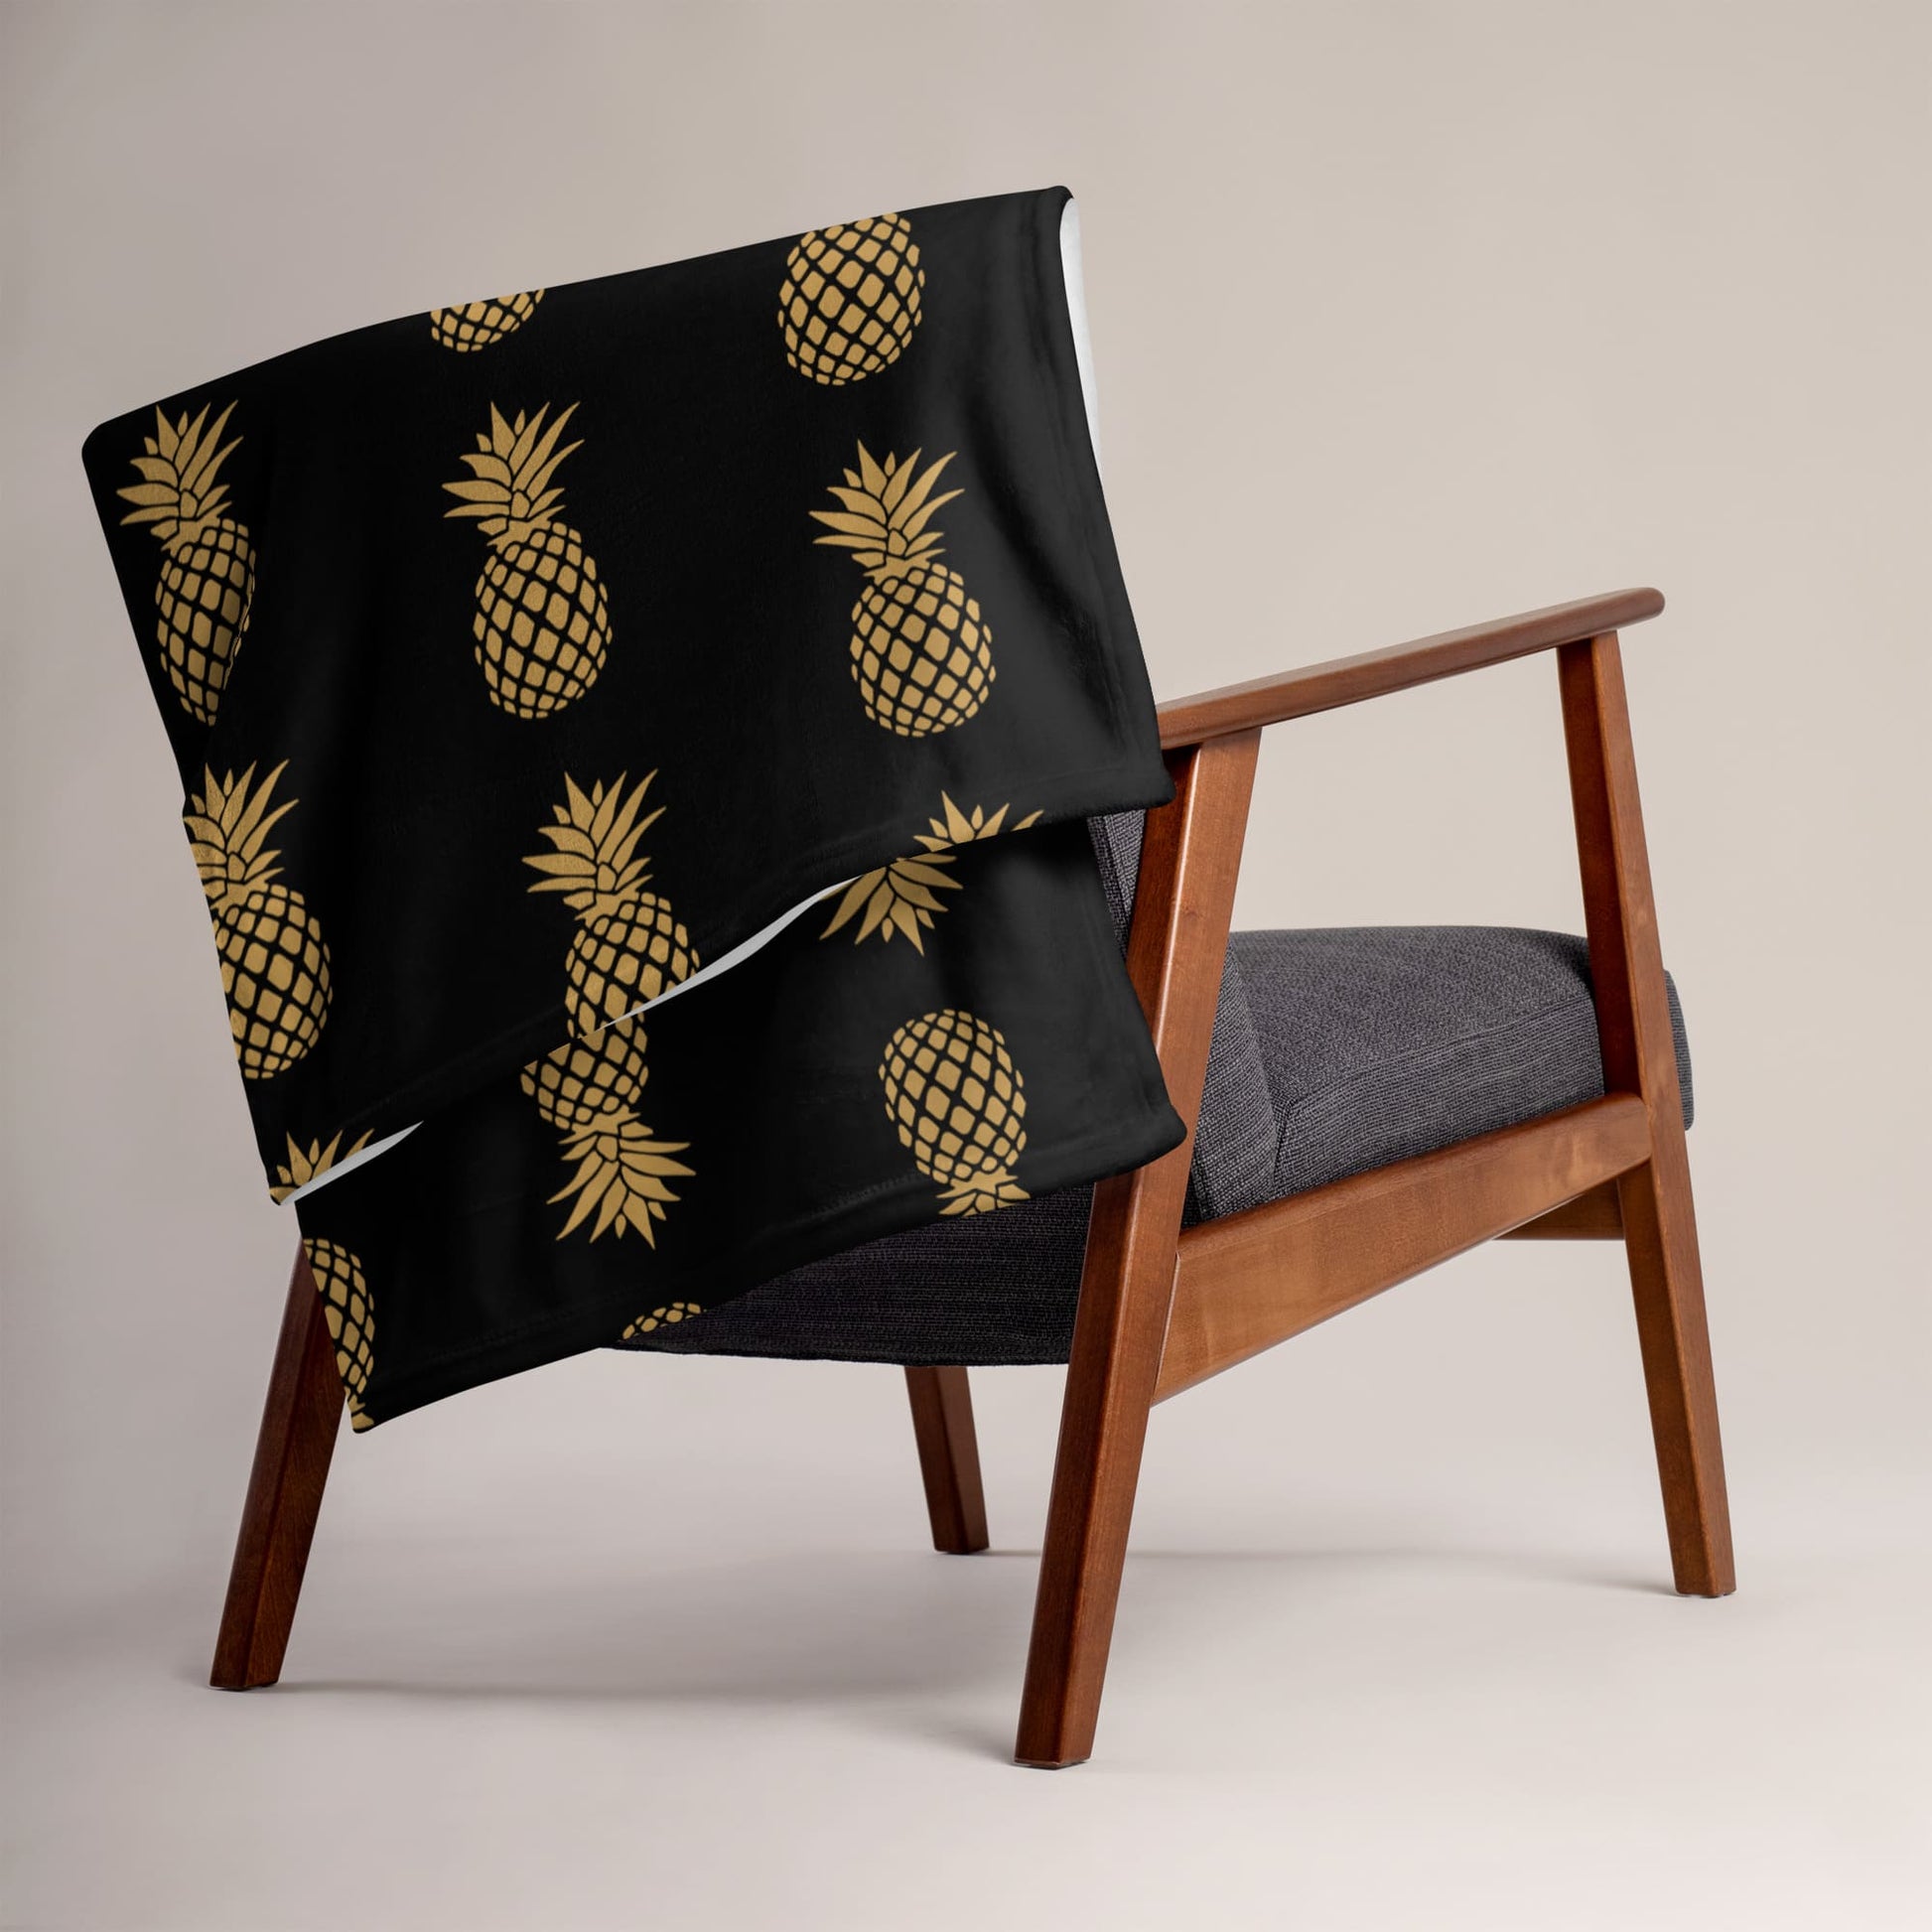 Swingers upside down pineapple blanket on chair